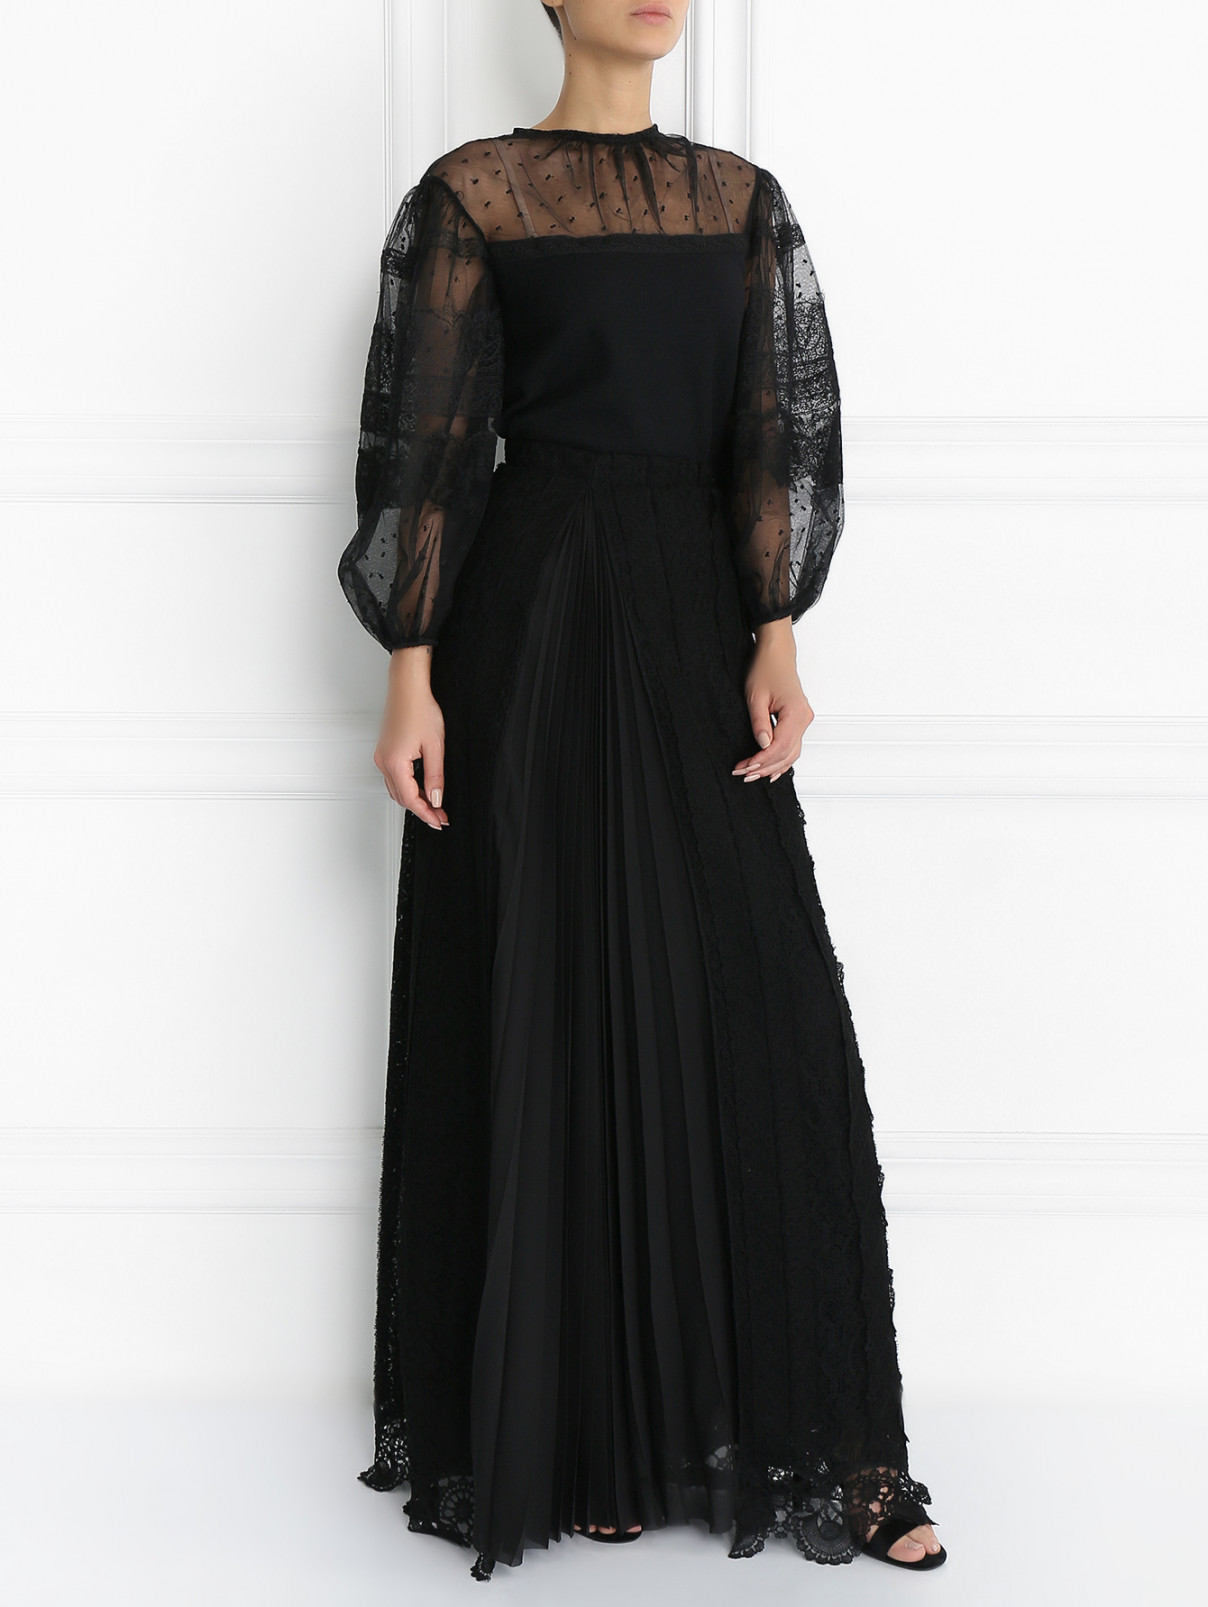 Кружевная юбка из шерсти Ermanno Scervino  –  Модель Общий вид  – Цвет:  Черный